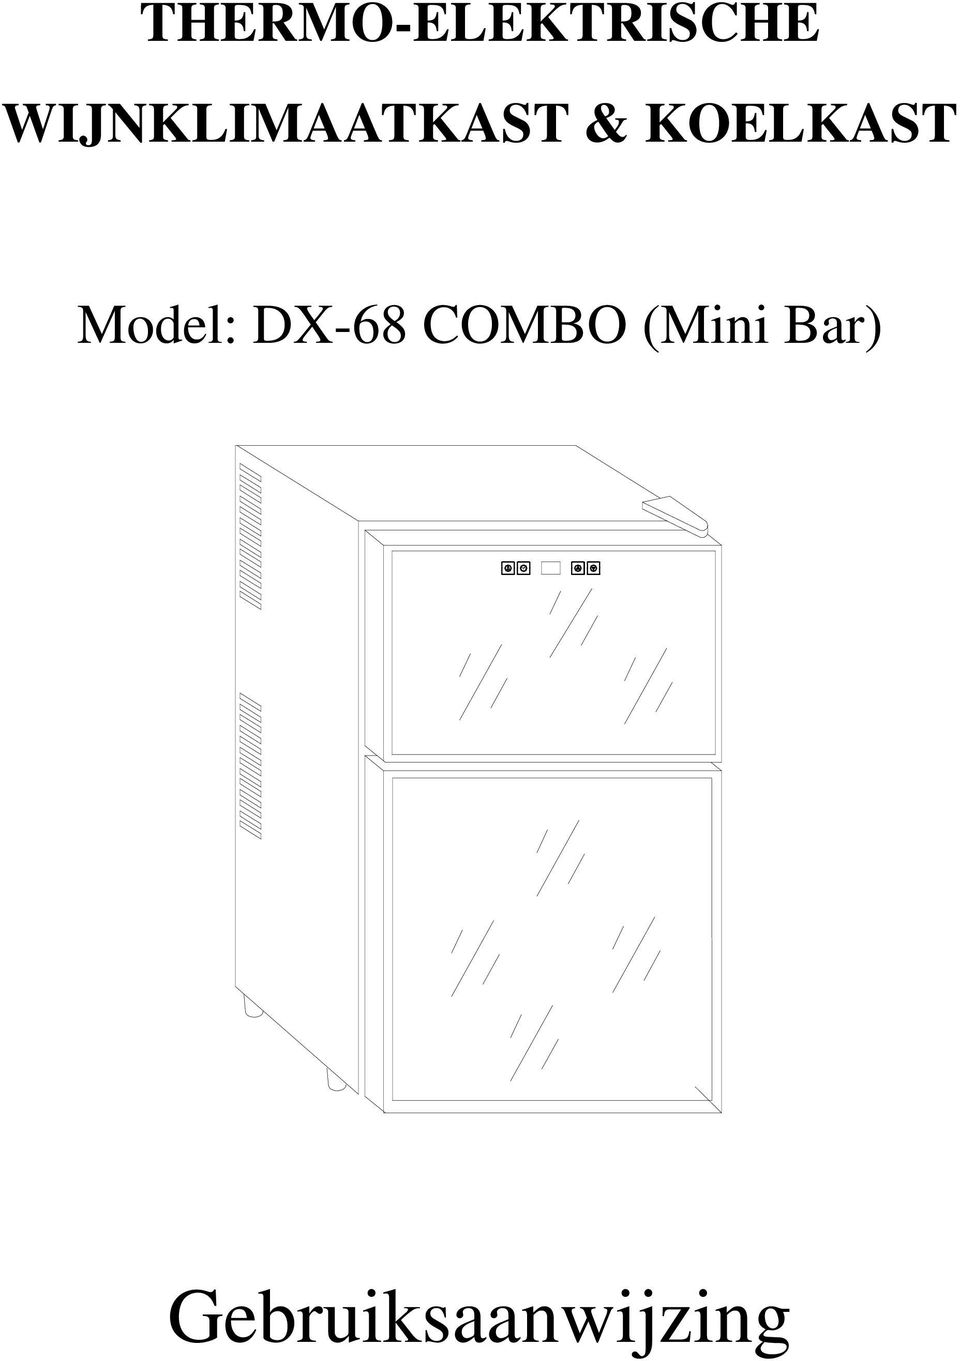 KOELKAST Model: DX-68